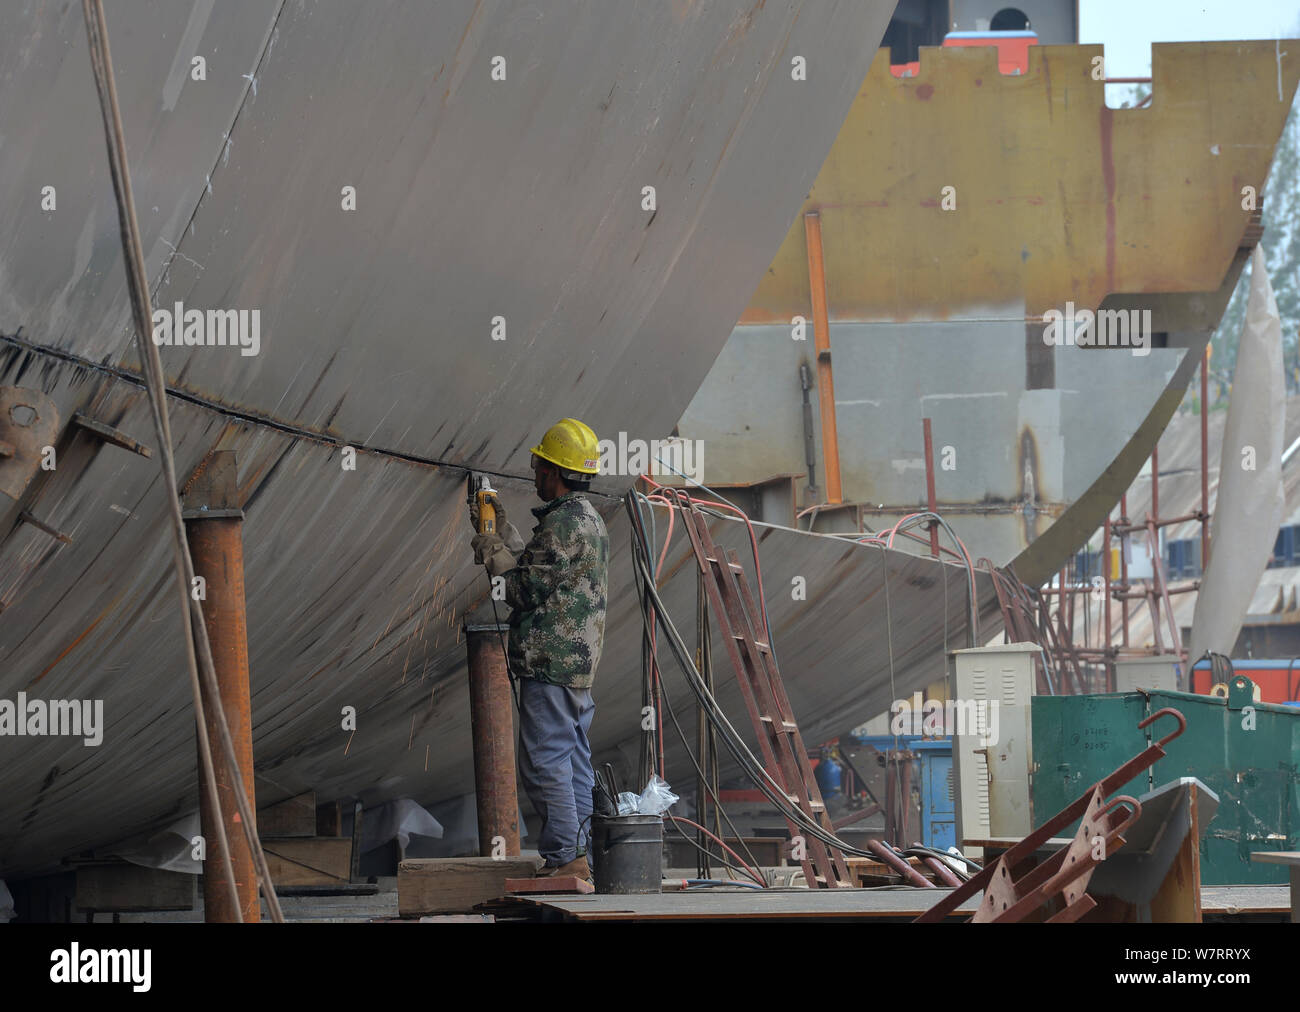 Du travail des travailleurs chinois sur le site de construction d'une réplique grandeur nature du paquebot Titanic dans le comté de Daying, ville de Suining, sud-ouest de la Chine" Banque D'Images